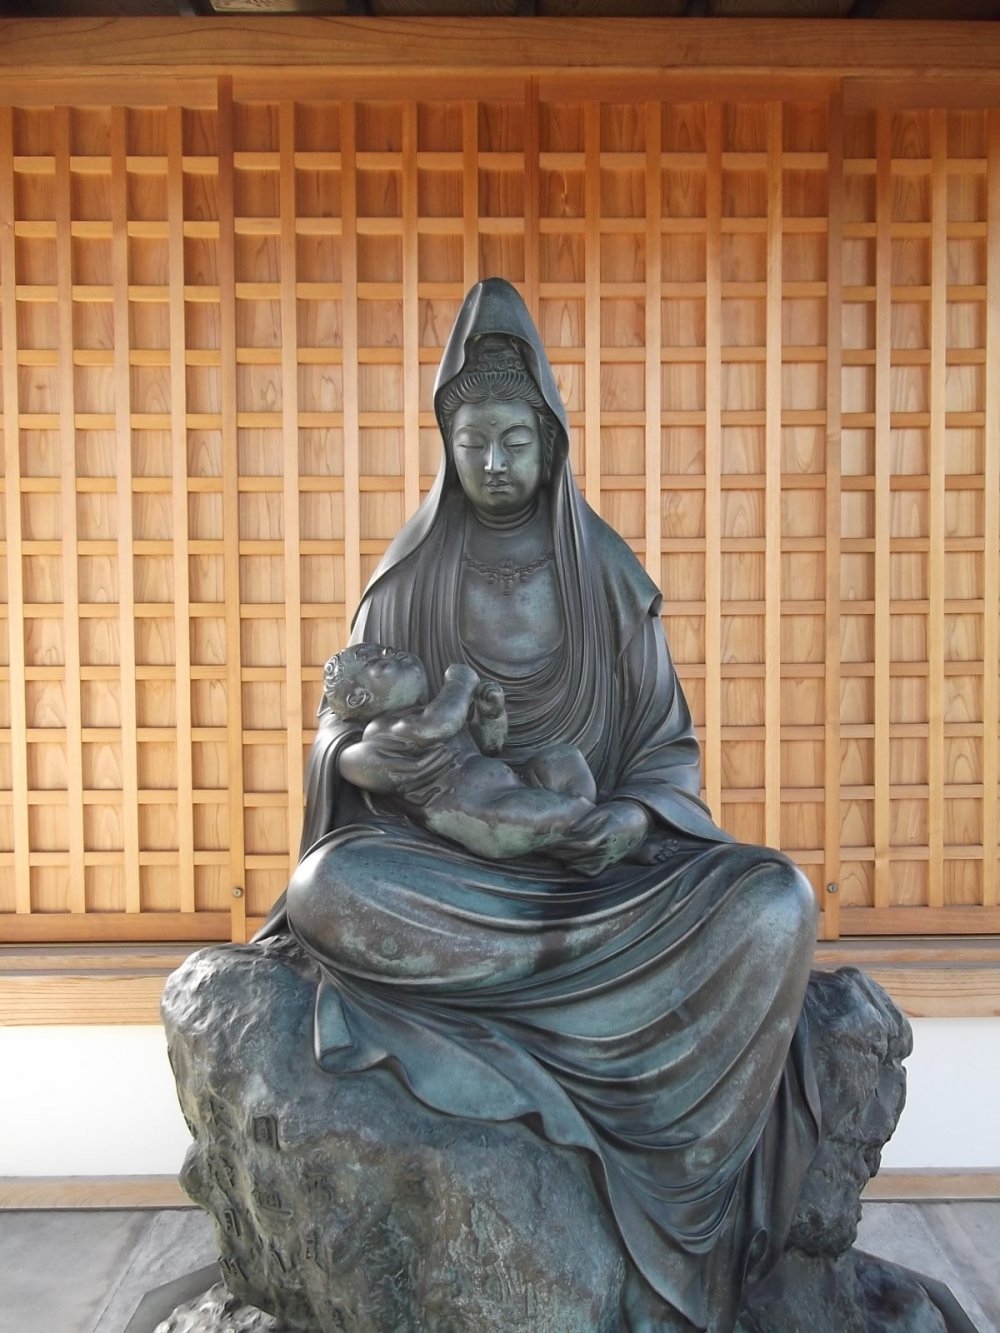 A Buddhist statue near the gate